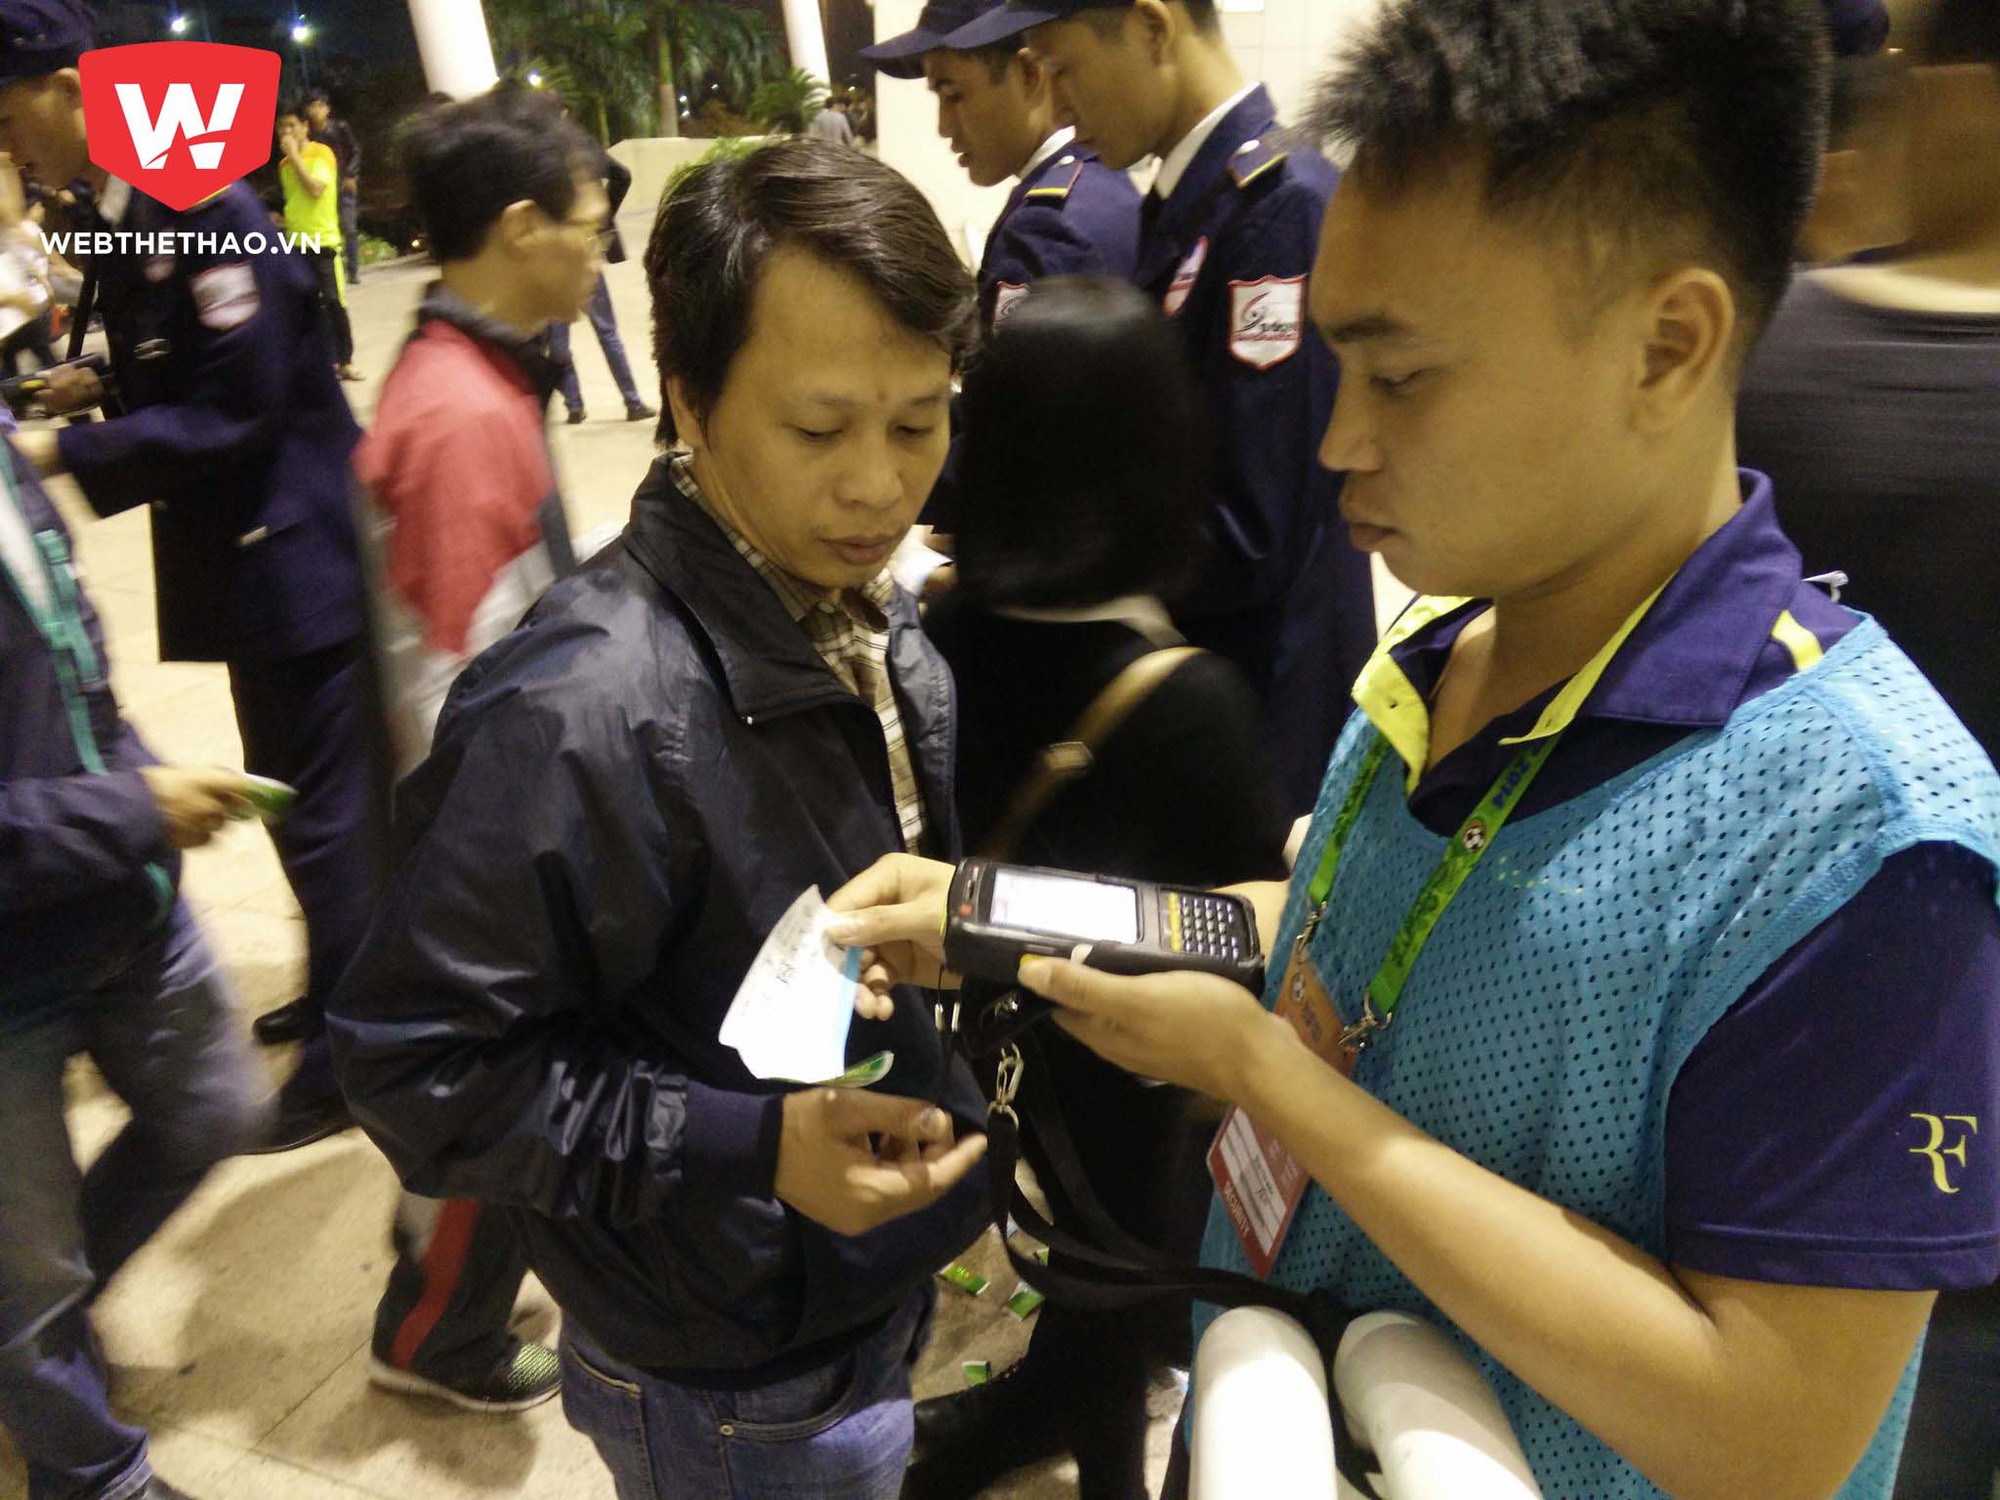 Nhân viên an ninh sử dụng máy quét xác minh vé thật nhờ hệ thống mã vạch hồi AFF Cup 2014. Ảnh: Tú Nguyễn.